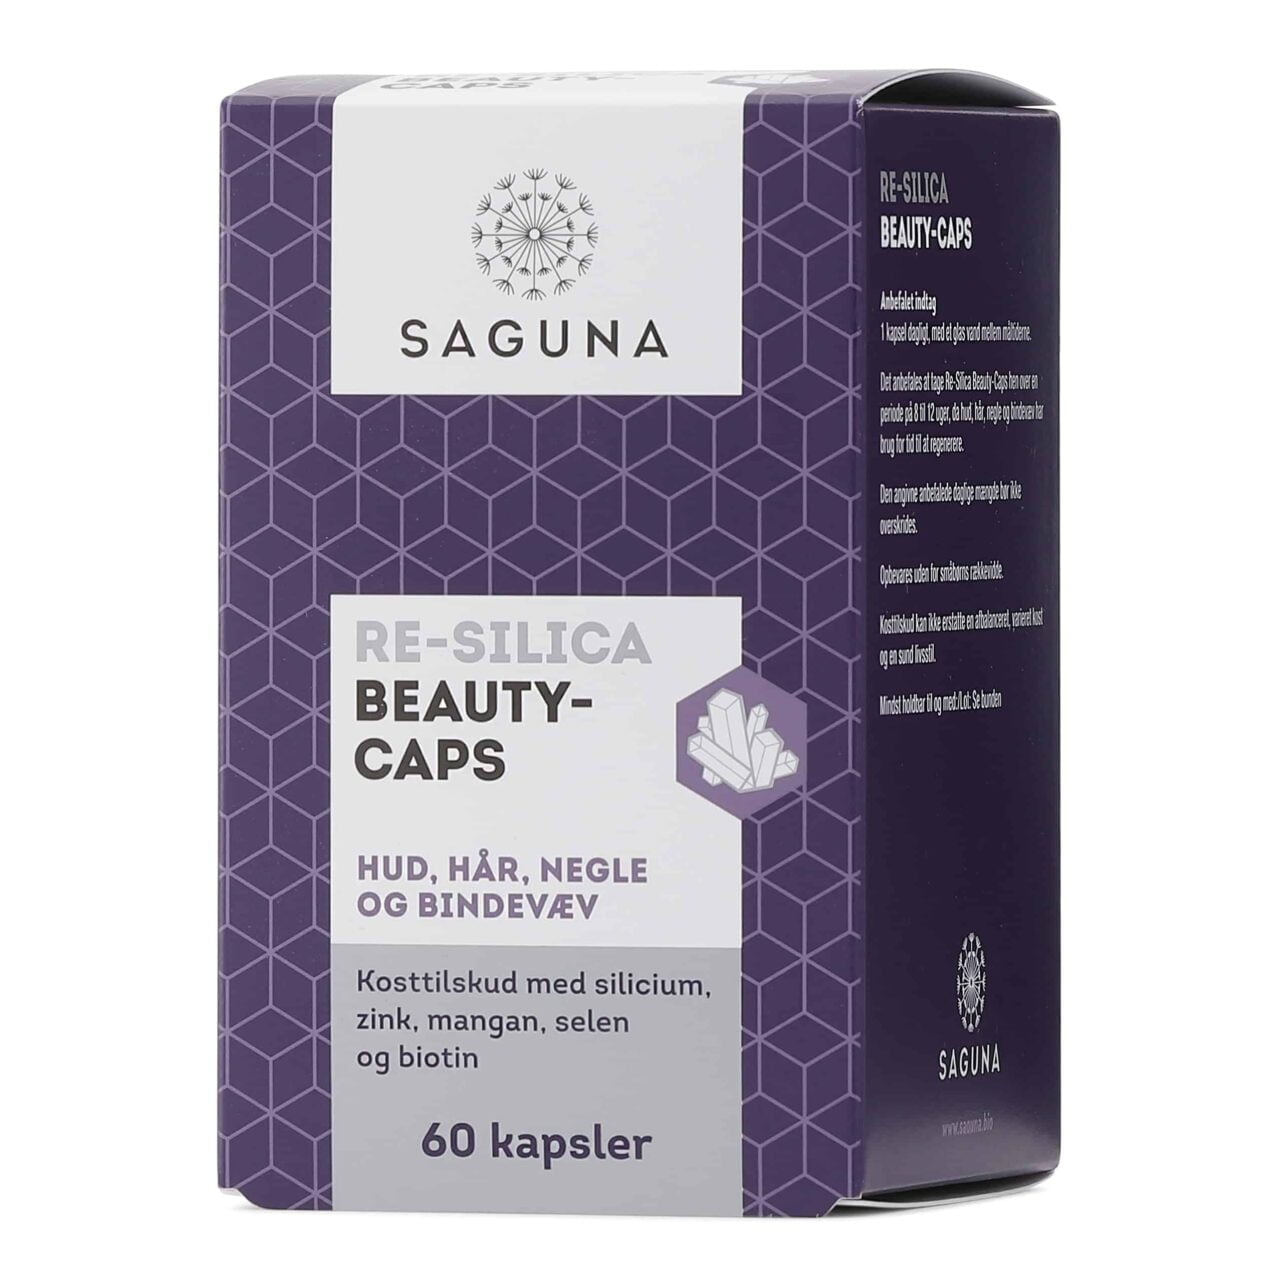 En æske Saguna Re-Silica 60 Kapsler Tilbud 2 æsker skønhedskasketter til velvære.